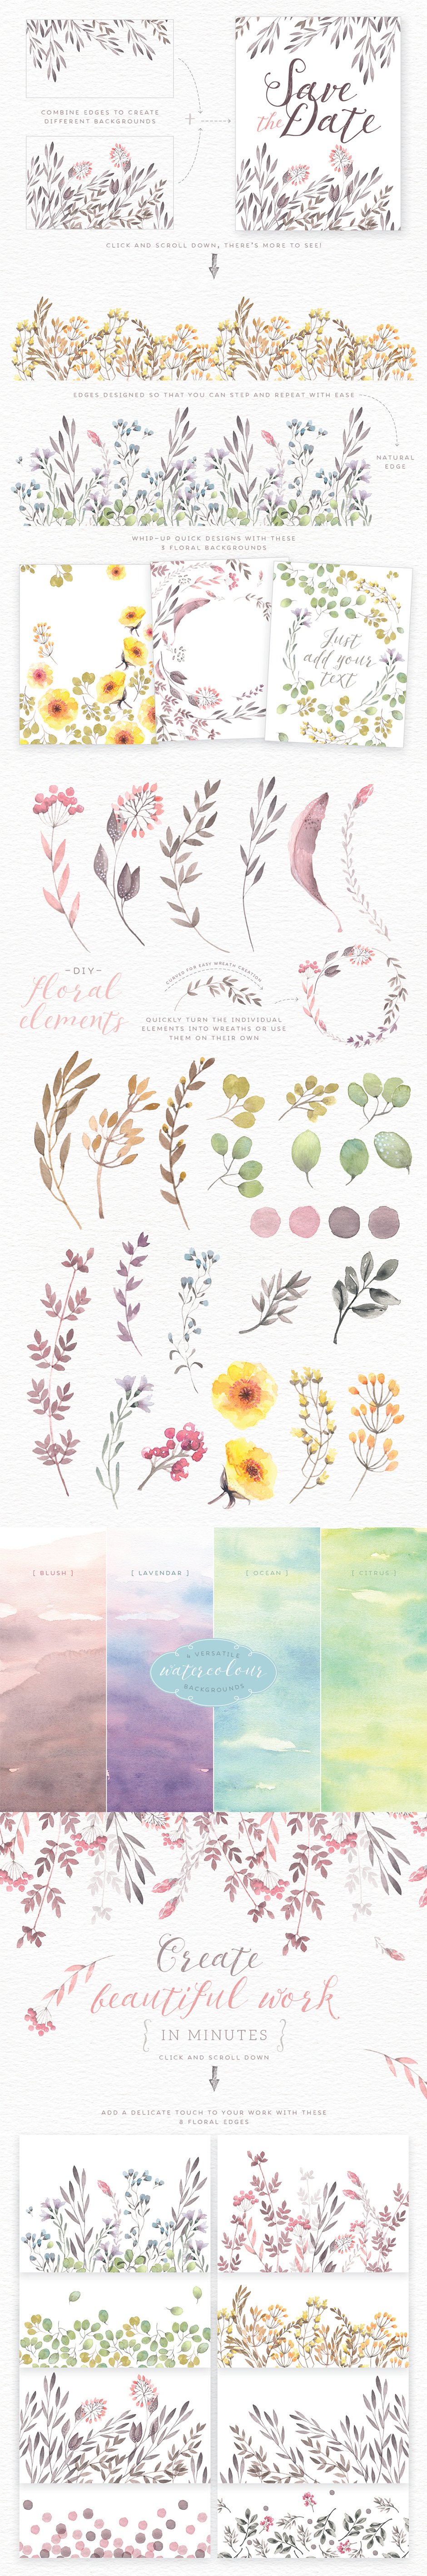 Watercolor Floral Edges Backgrounds